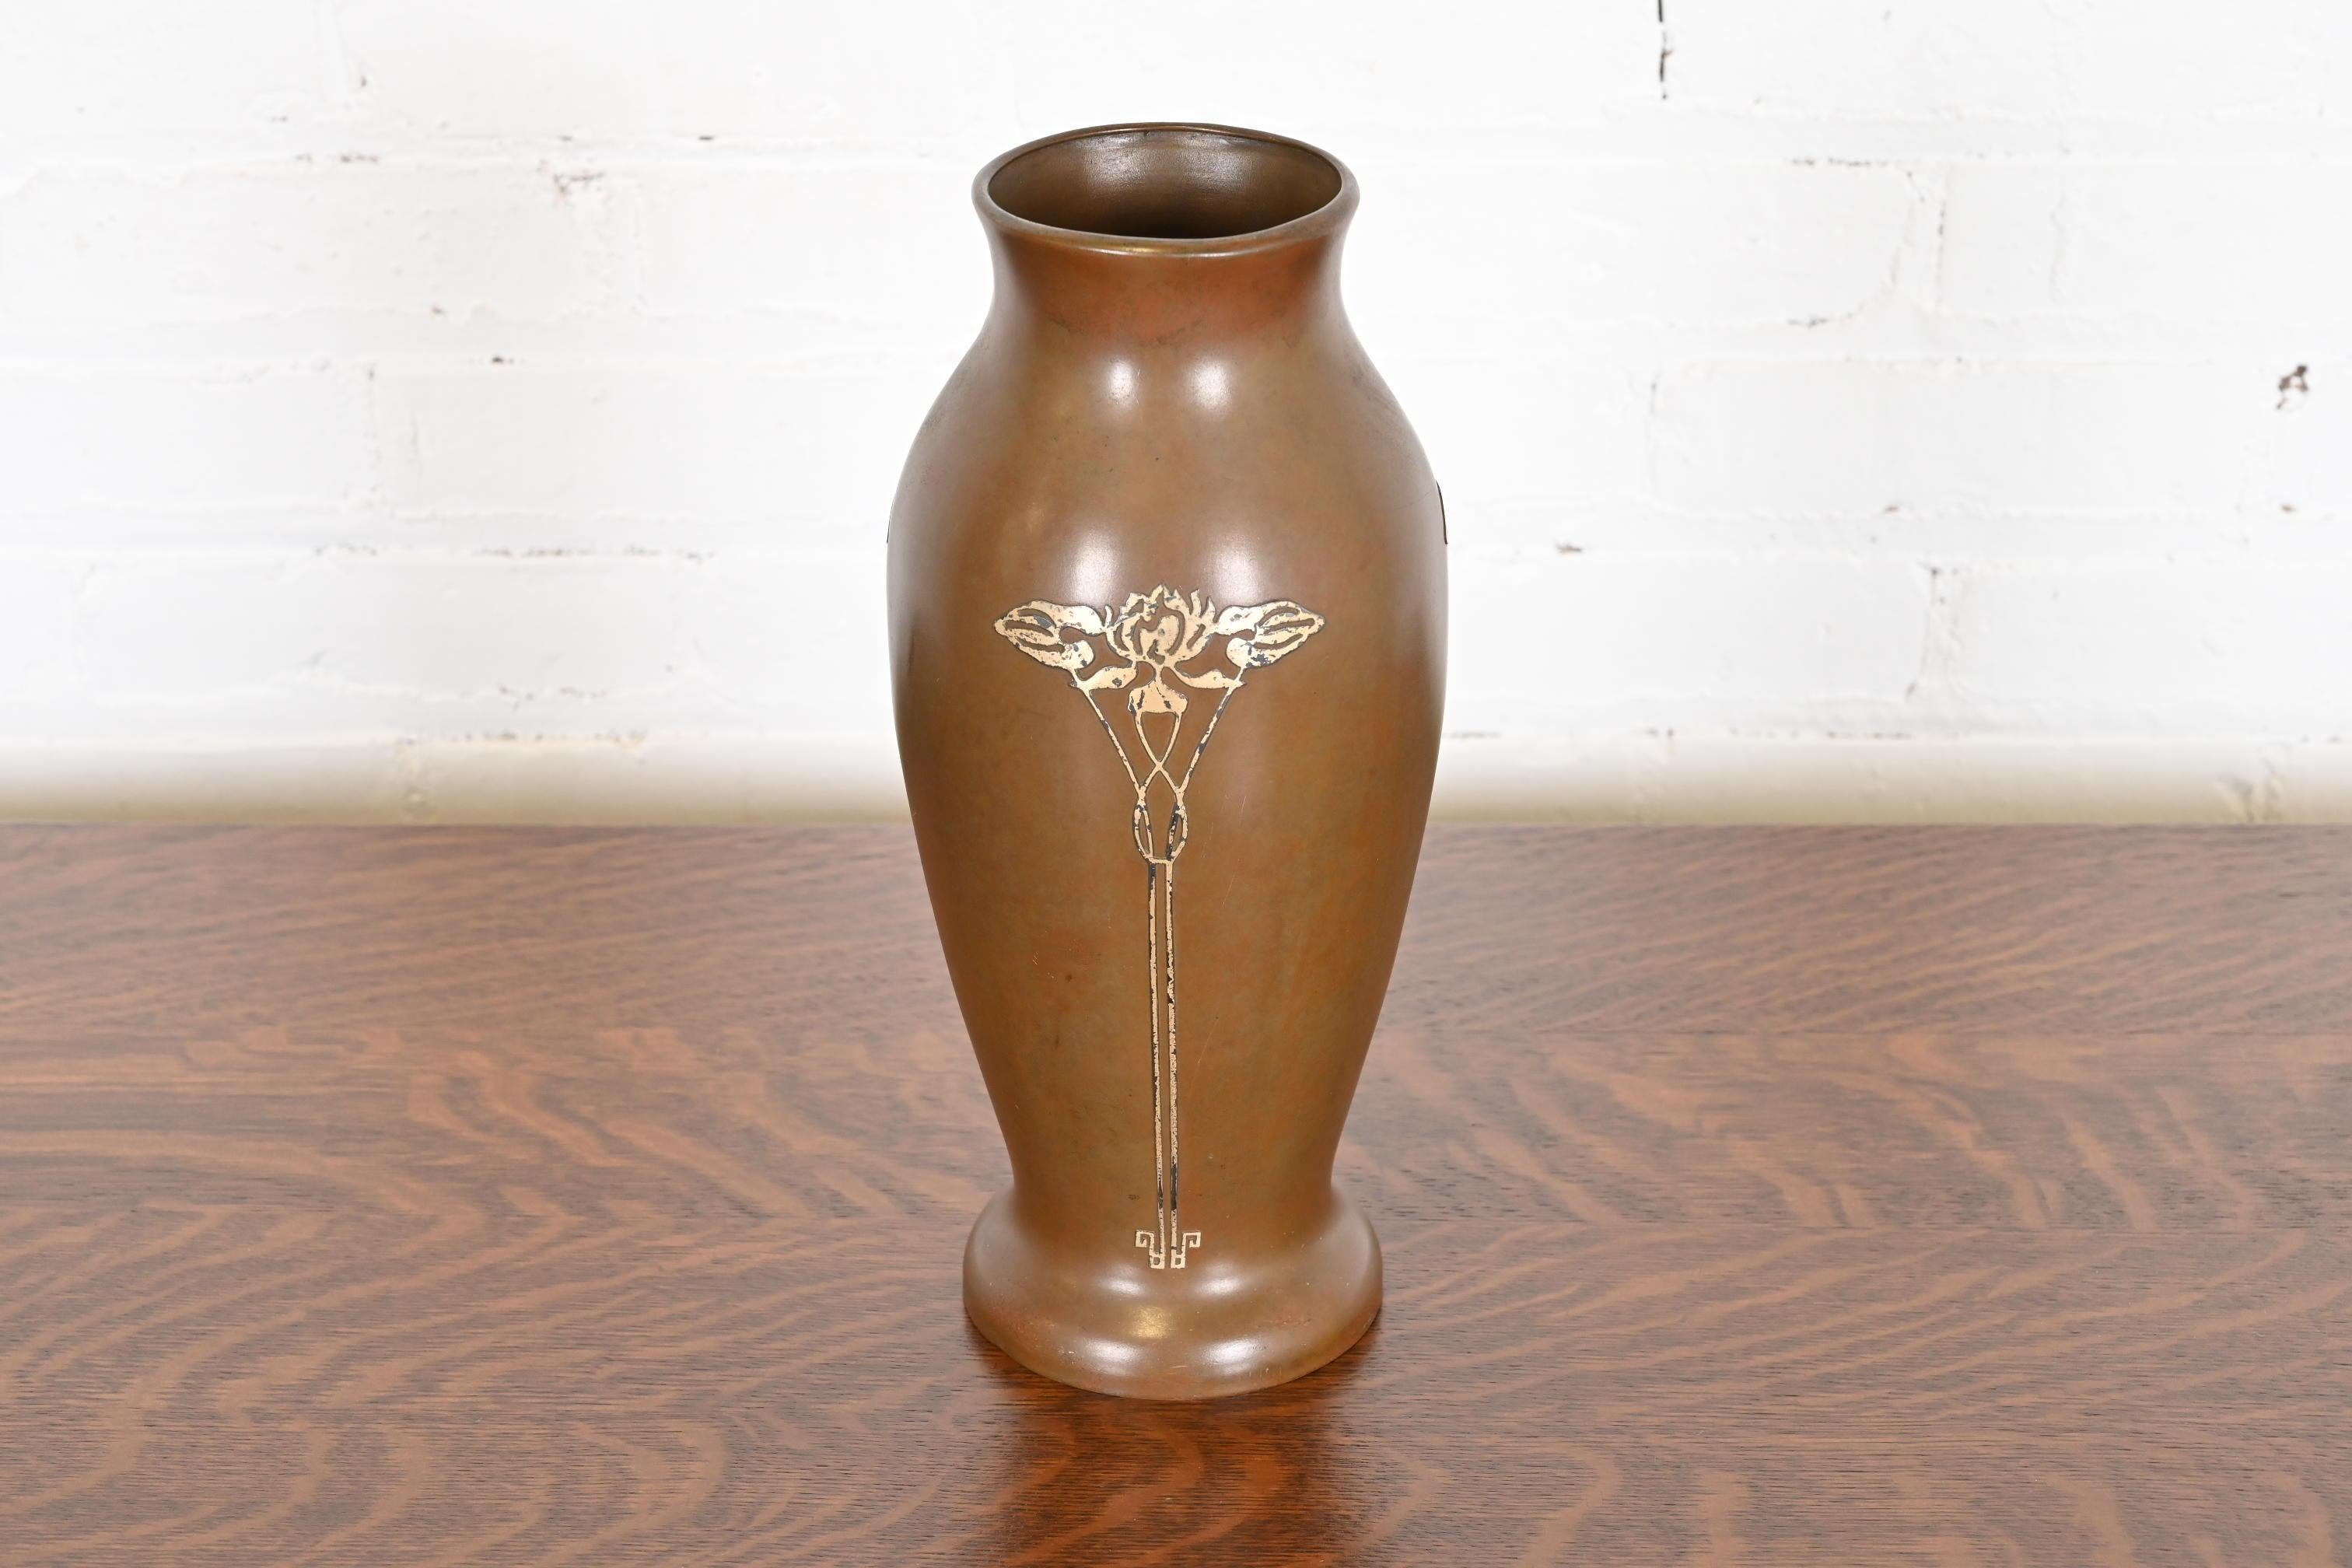 Magnifique vase floral en argent sterling et bronze d'époque Arts & Crafts

Par Silver Crest (la marque de Smith Metal Arts Co.), une filiale de Heintz Art Metal Shop.

États-Unis d'Amérique, début du 20e siècle

Mesures : 5,5 